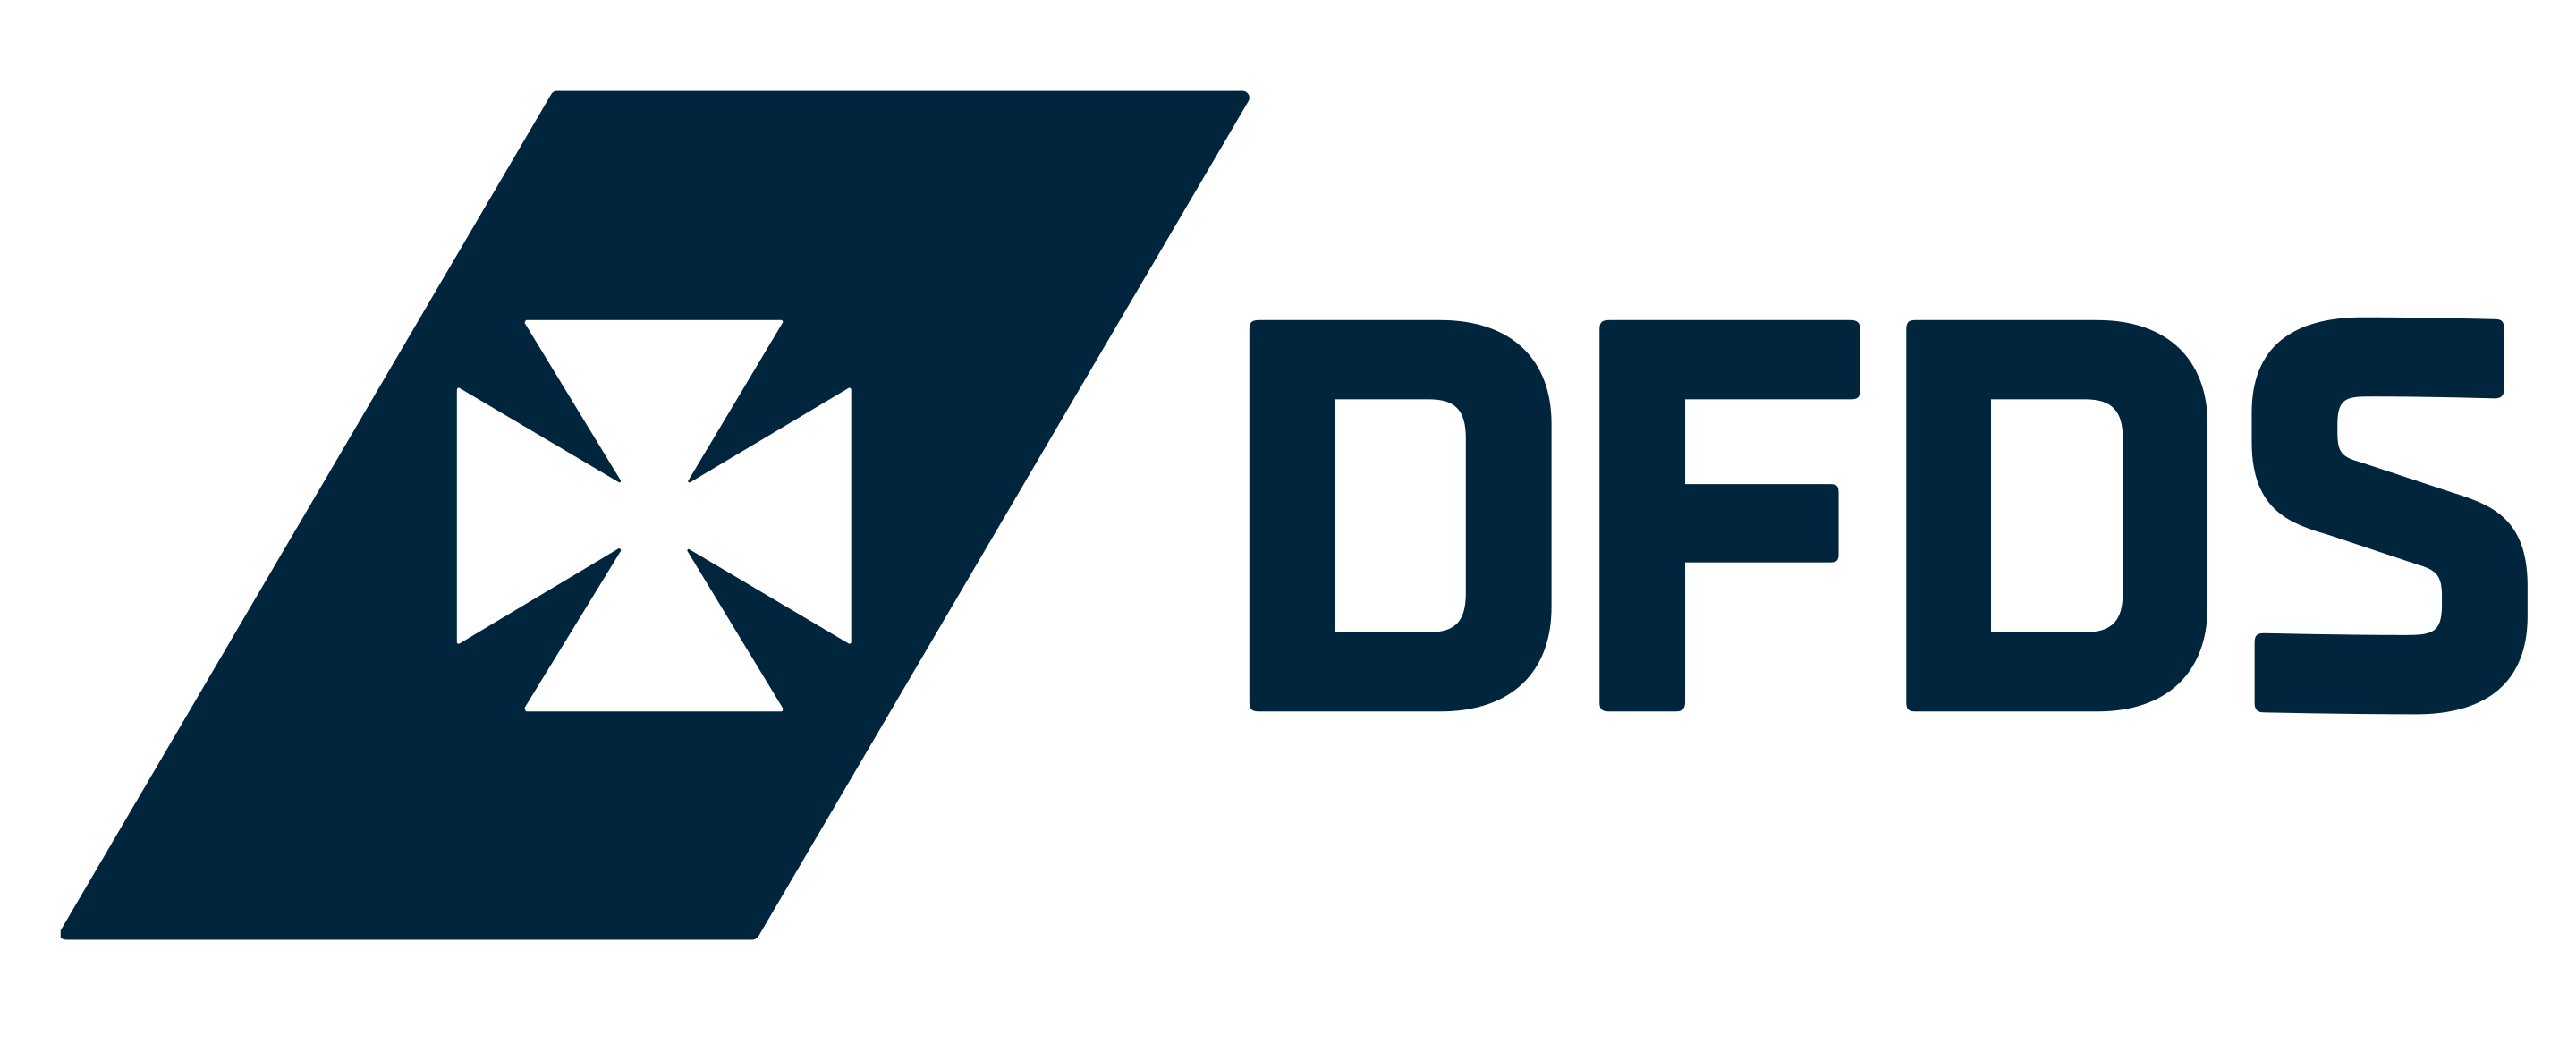 DFDS Seaways logója